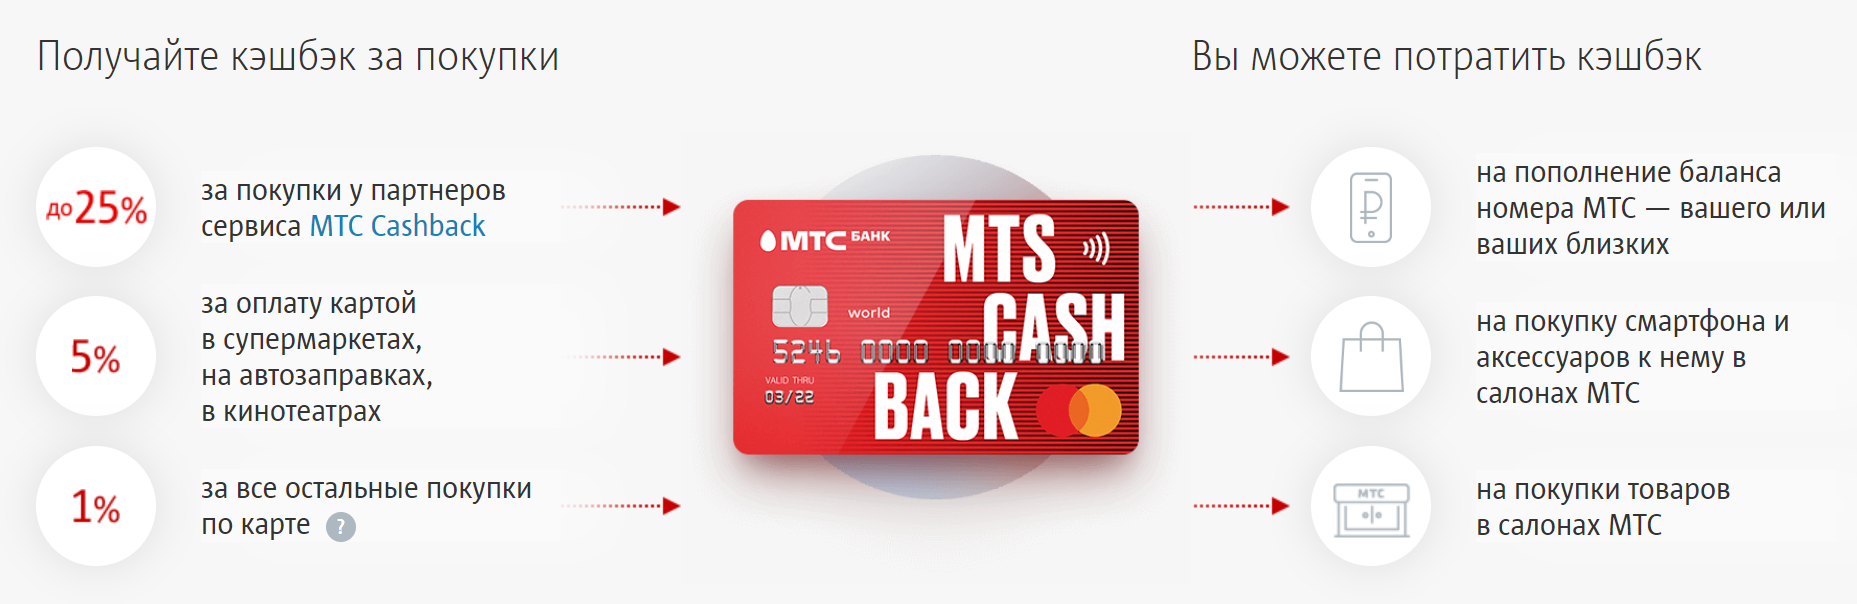 Виртуальная карта mts cashback за пару кликов — в вашем смартфоне